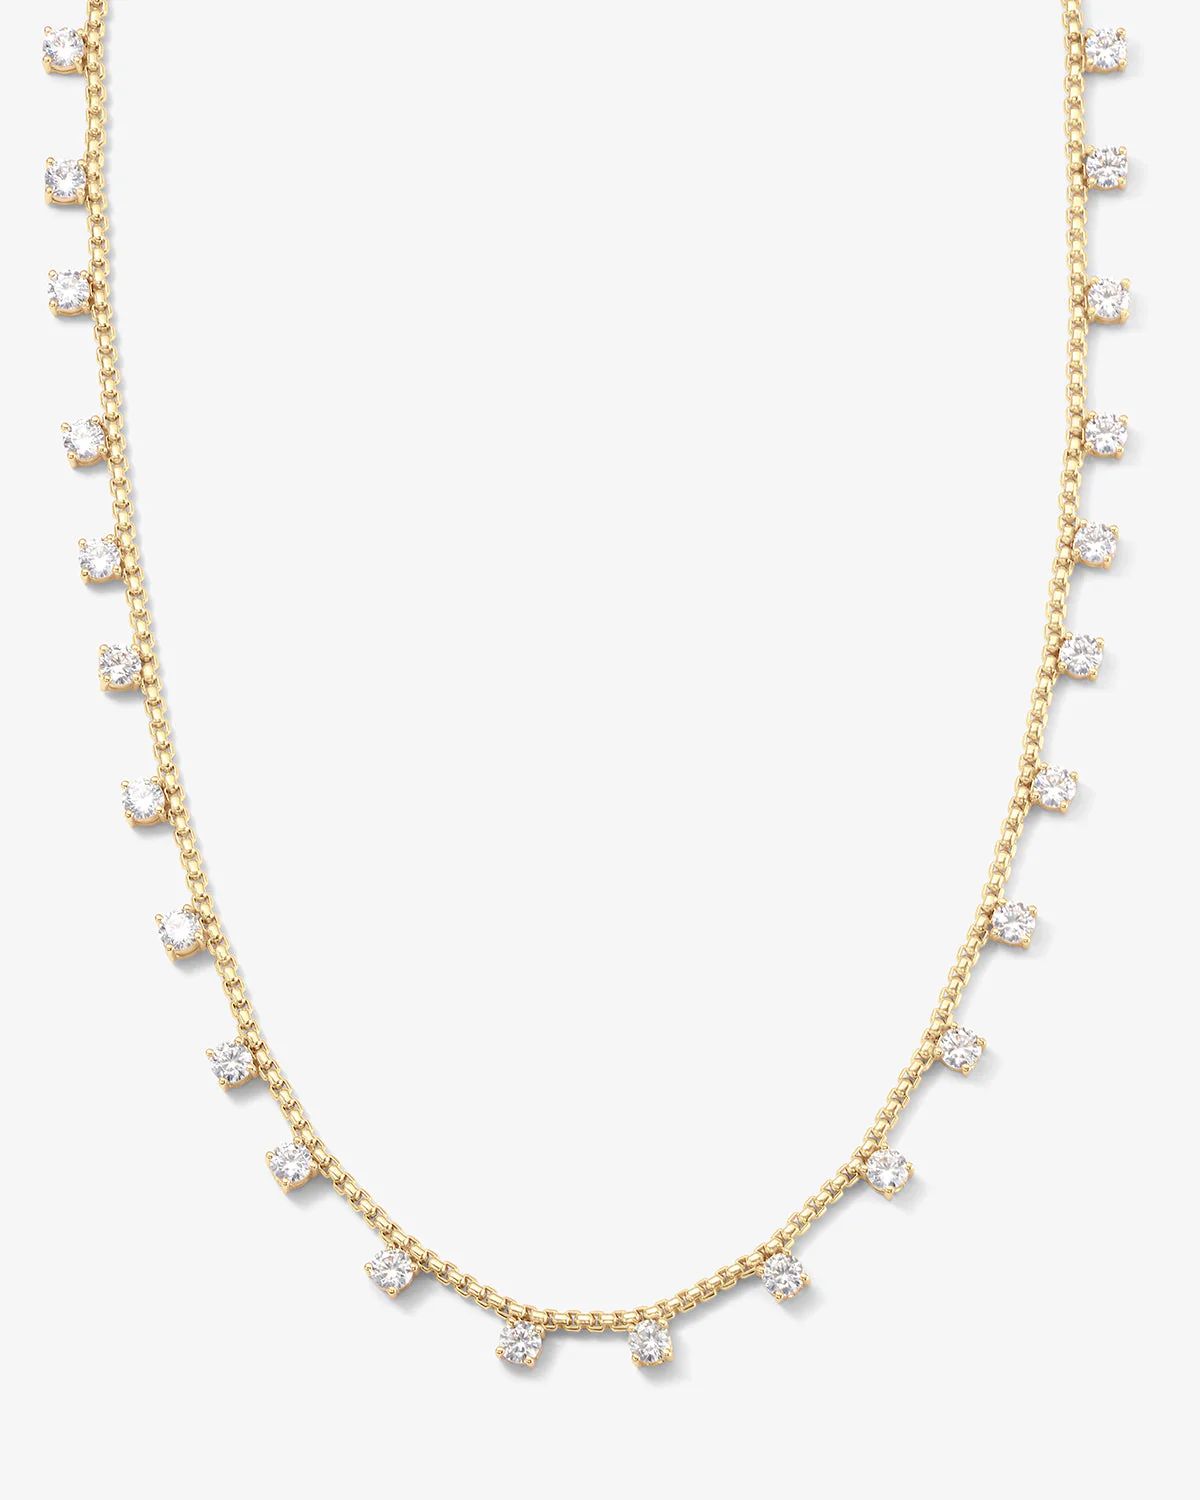 Lavish Necklace - Gold|White Diamondettes | Melinda Maria